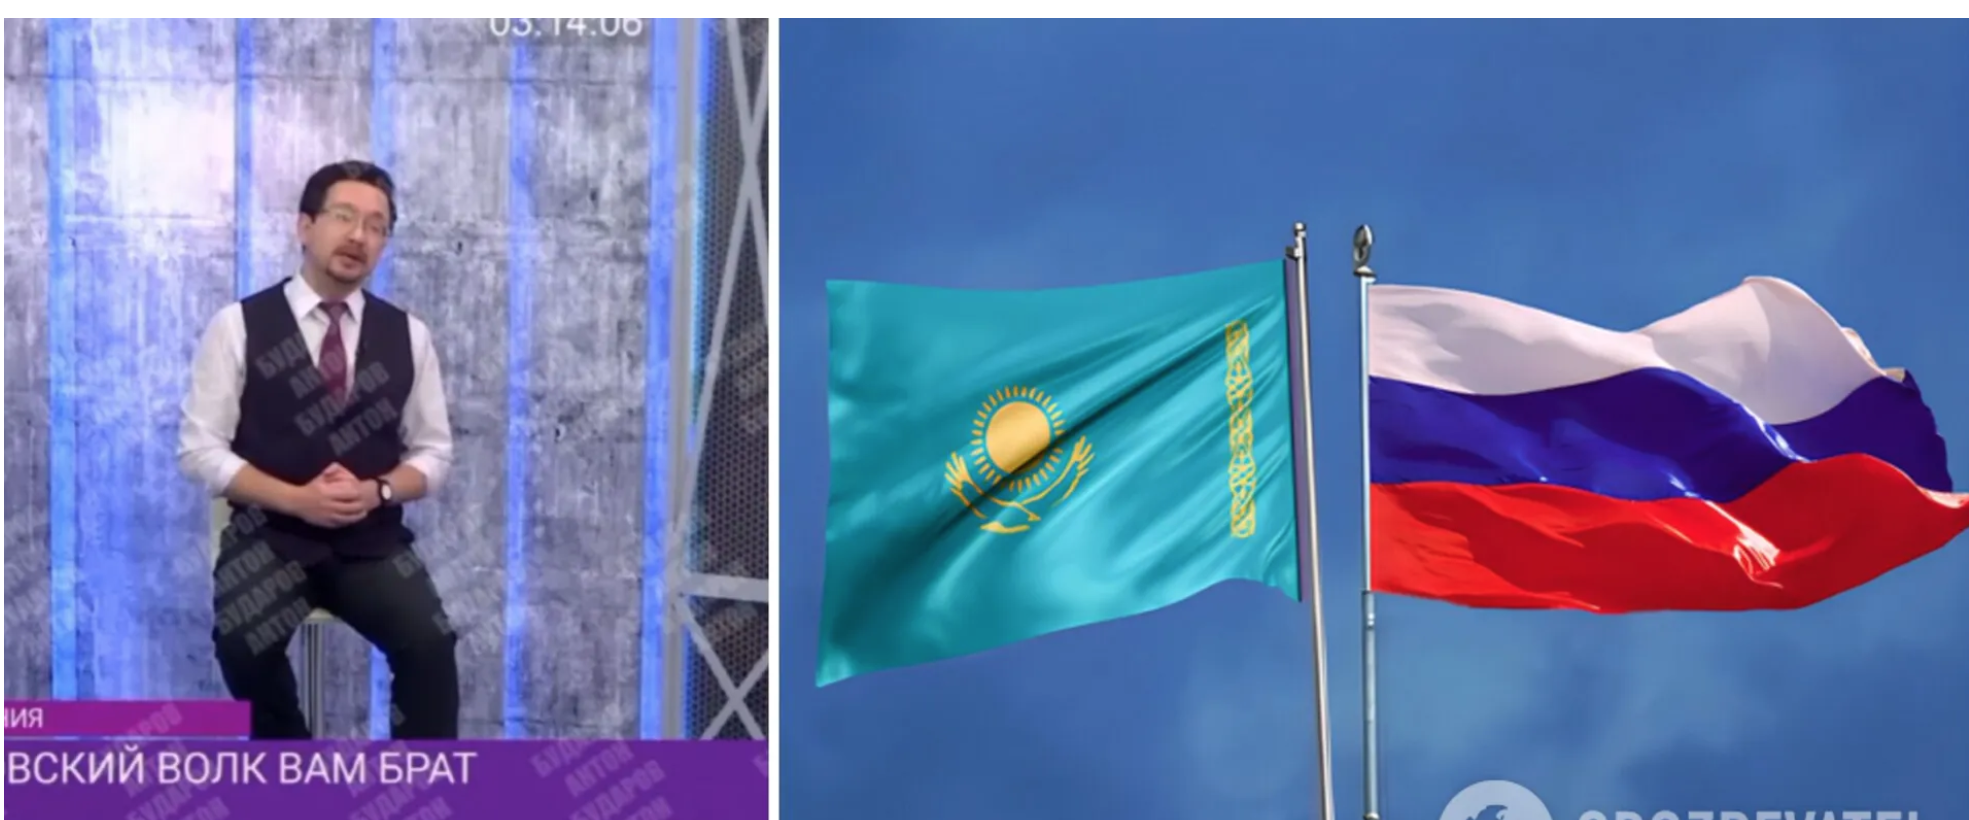 У Казахстані заявили, що Астрахань, Оренбург, Тюмень та Алтай завжди були казахськими, а не російськими: відео викликало ажіотаж